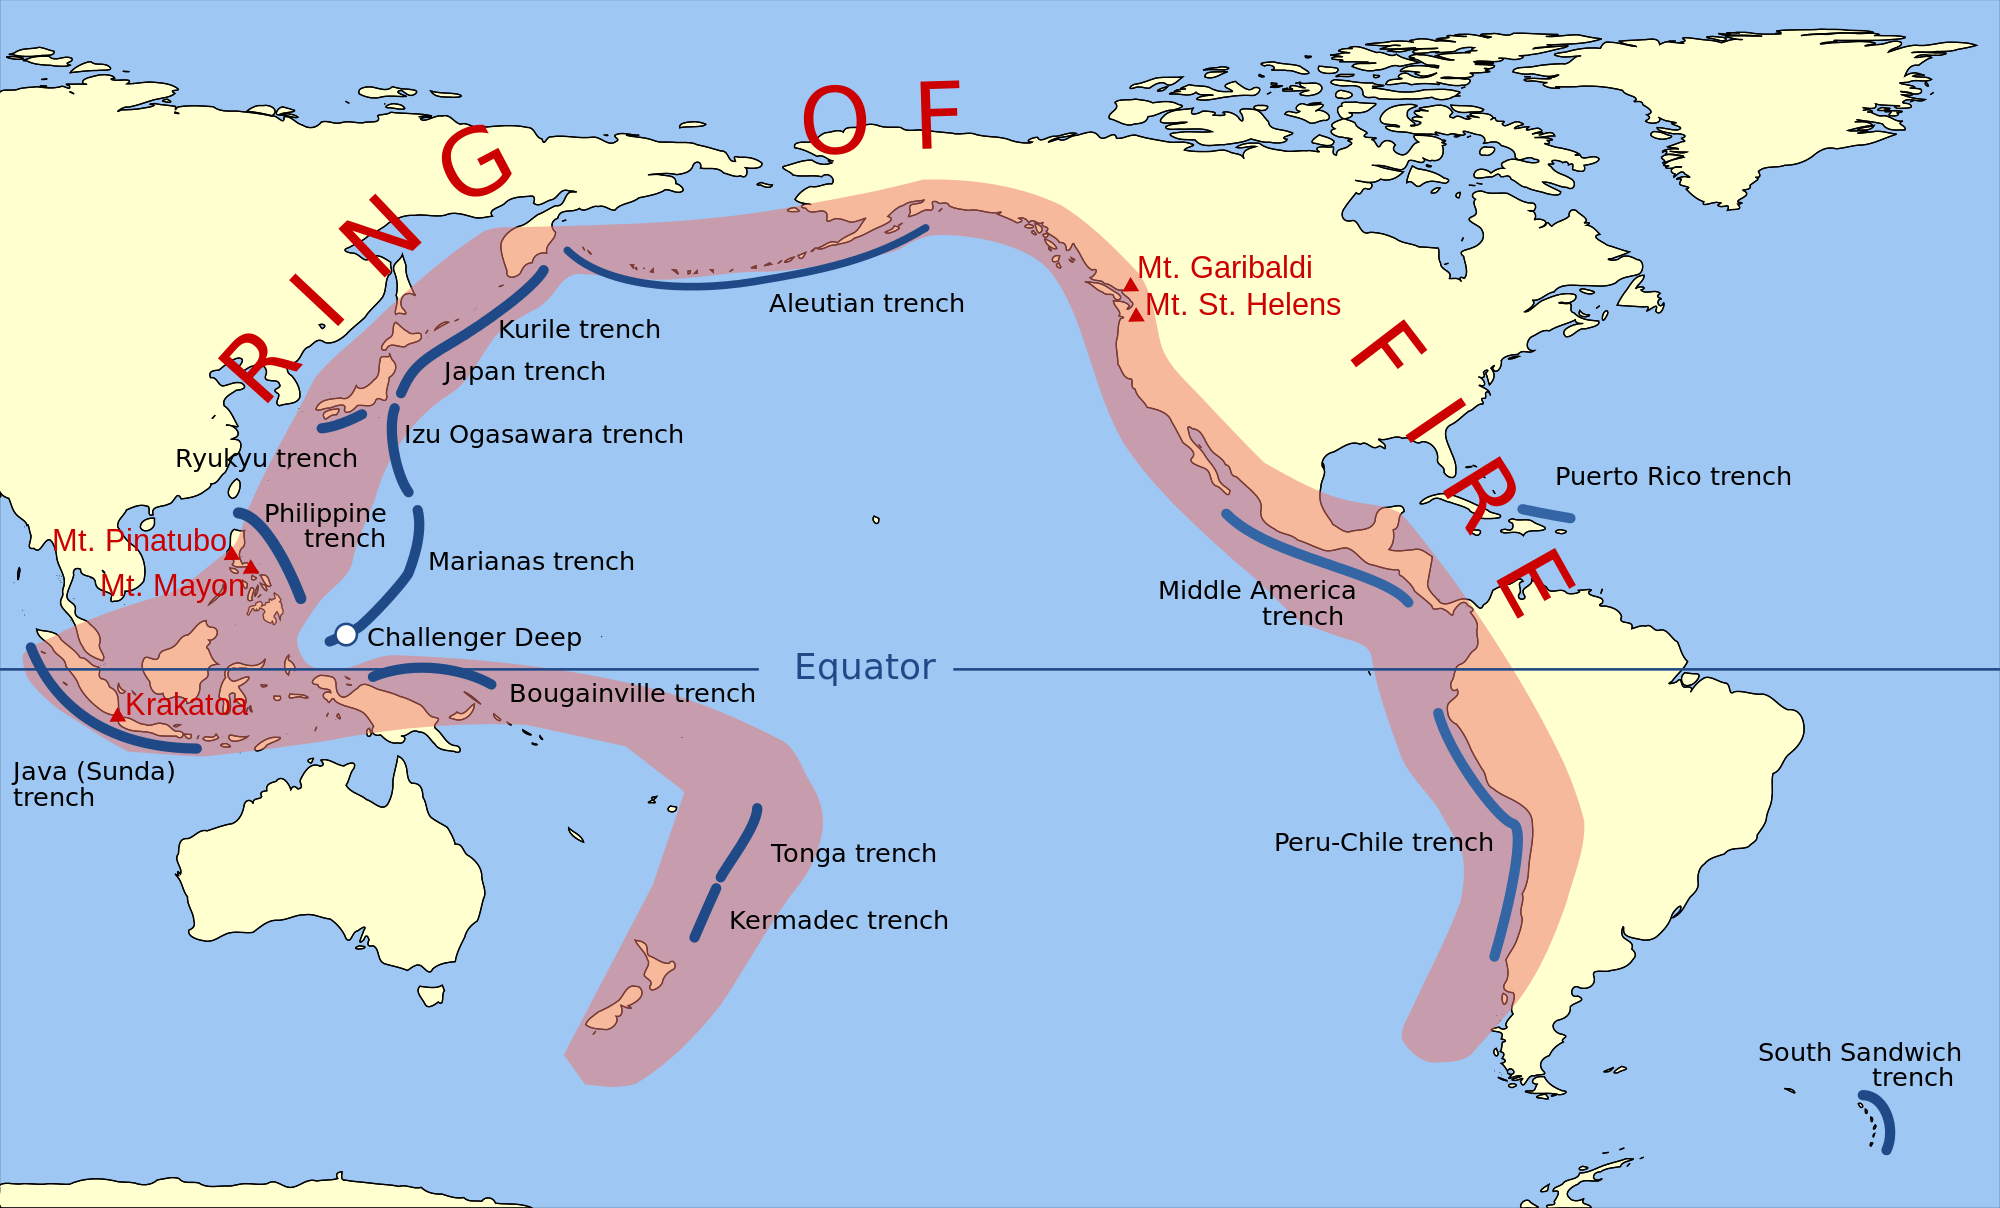 Βρετανός σεισμολόγος προειδοποιεί: Μπορεί να προκληθούν σεισμοί άνω των 8 Ρίχτερ